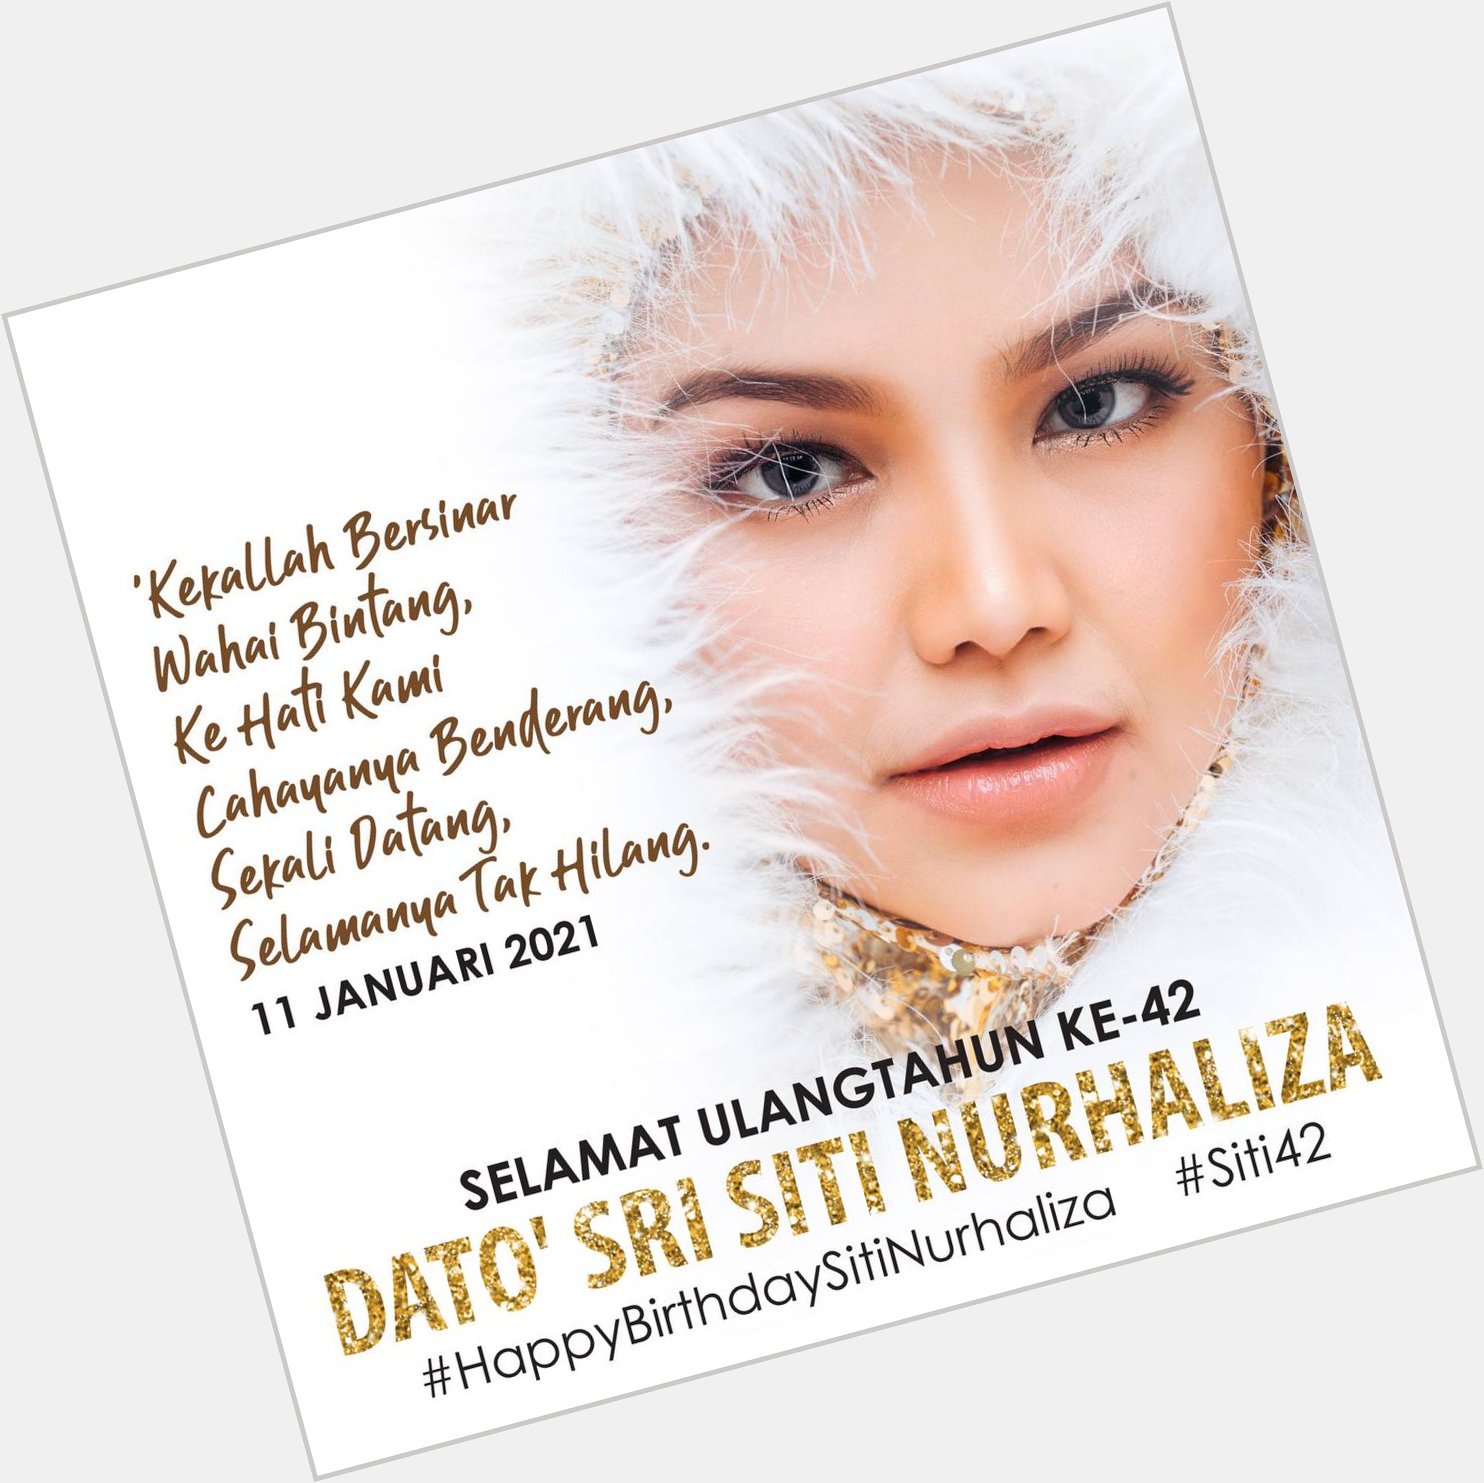 Happy birthday to my dearest, Siti Nurhaliza~    